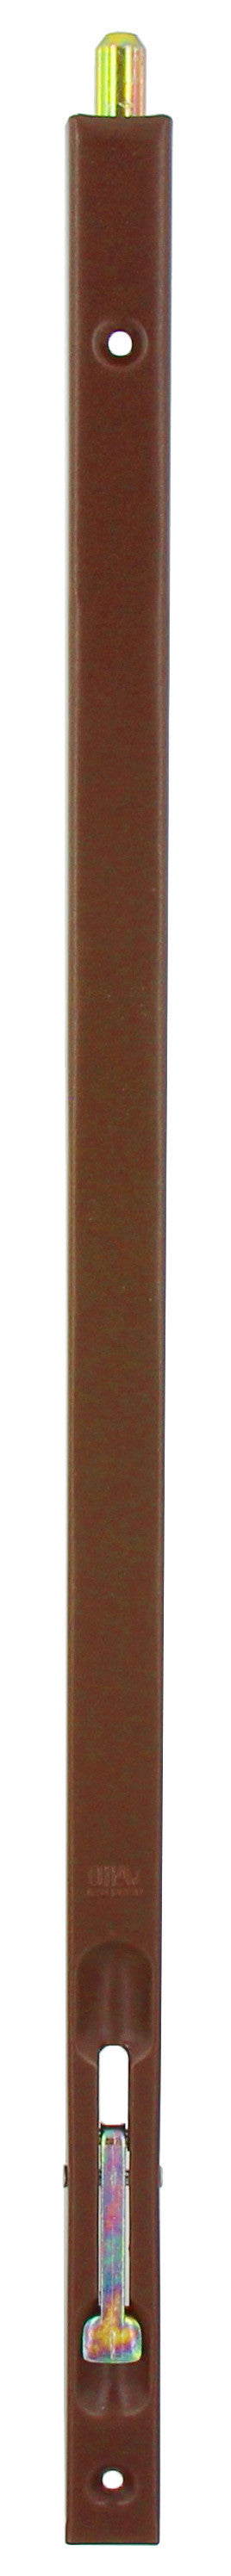 Bl catenaccio incasso bronzato 160 mm